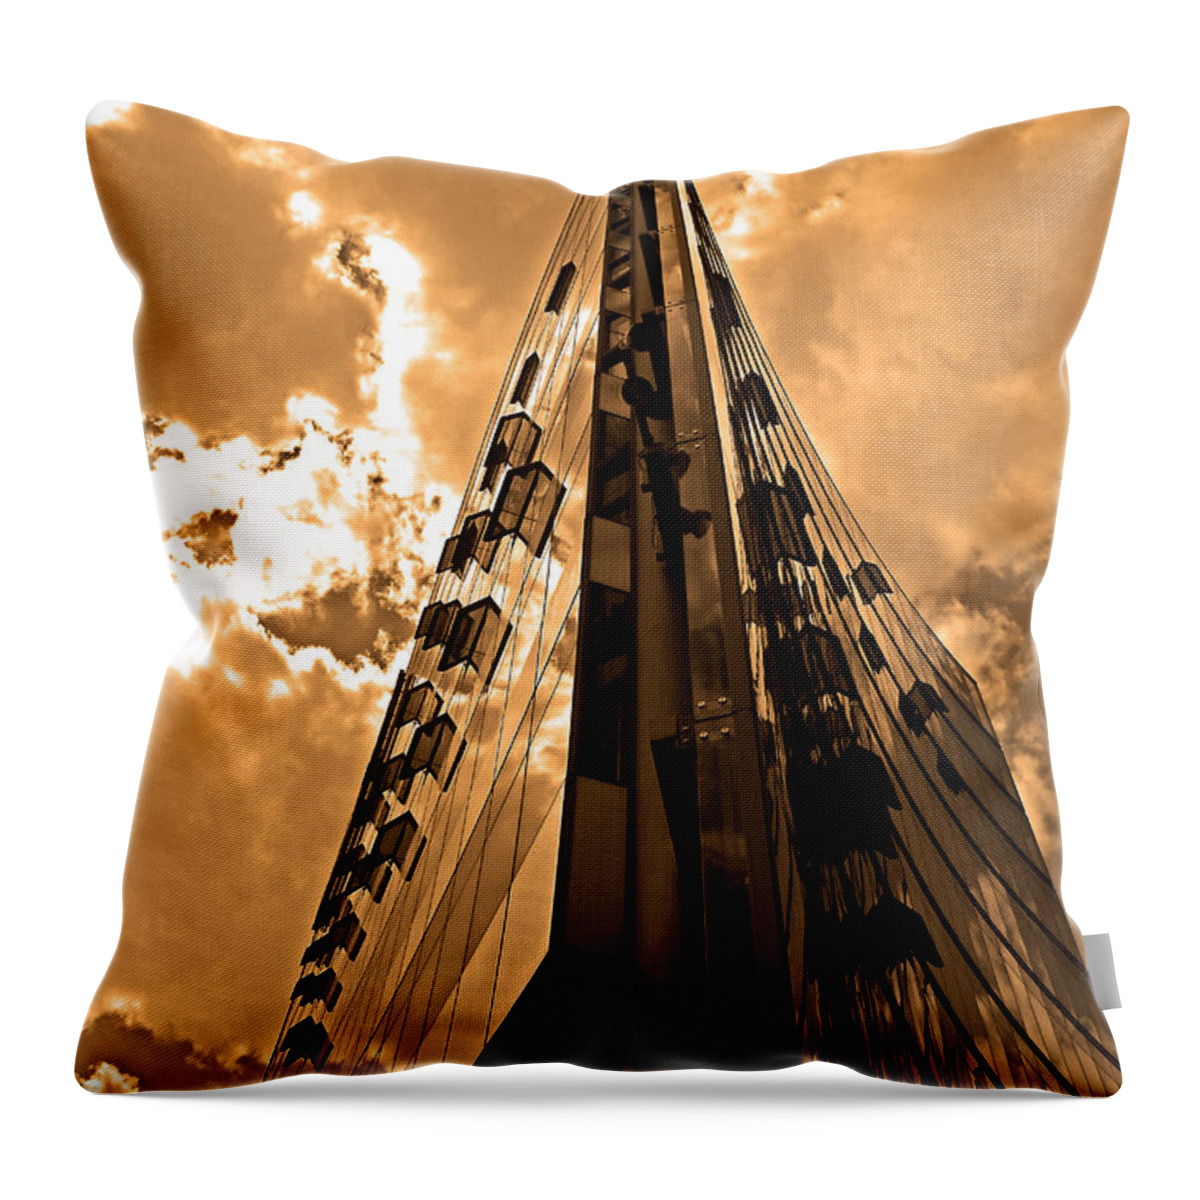 Europa Throw Pillow featuring the photograph Sanofi - Aventis Berlin #1 by Juergen Weiss